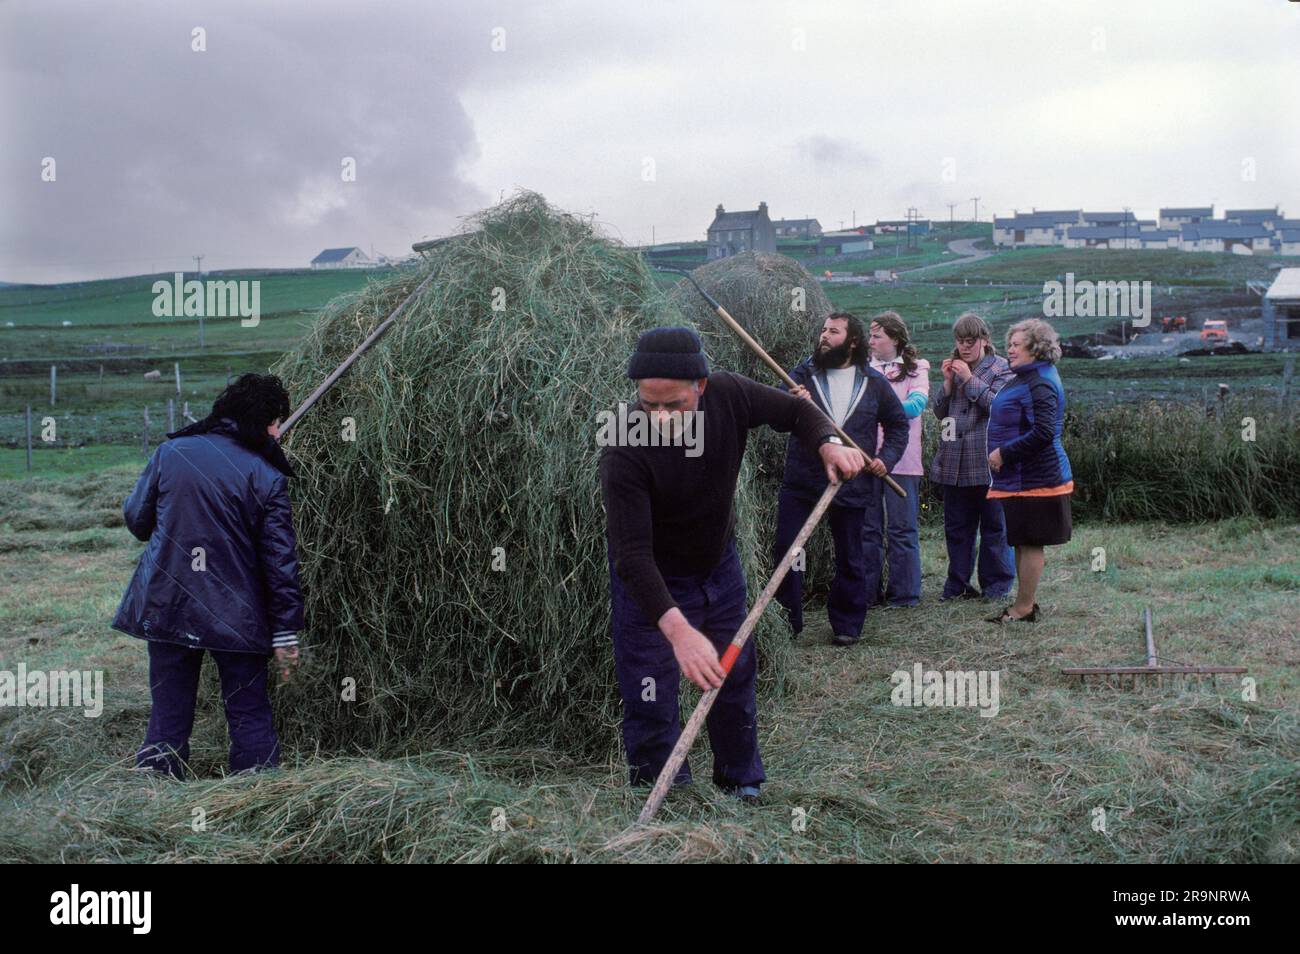 Crofting des îles Shetland. Crofters, mari, femme et famille amis construisant une pile de foin. Nouvelles maisons de l'industrie pétrolière sur la colline à distance. Shetlands Mainland, îles Shetland, Écosse, vers 1979. ROYAUME-UNI 1970S HOMER SYKES Banque D'Images